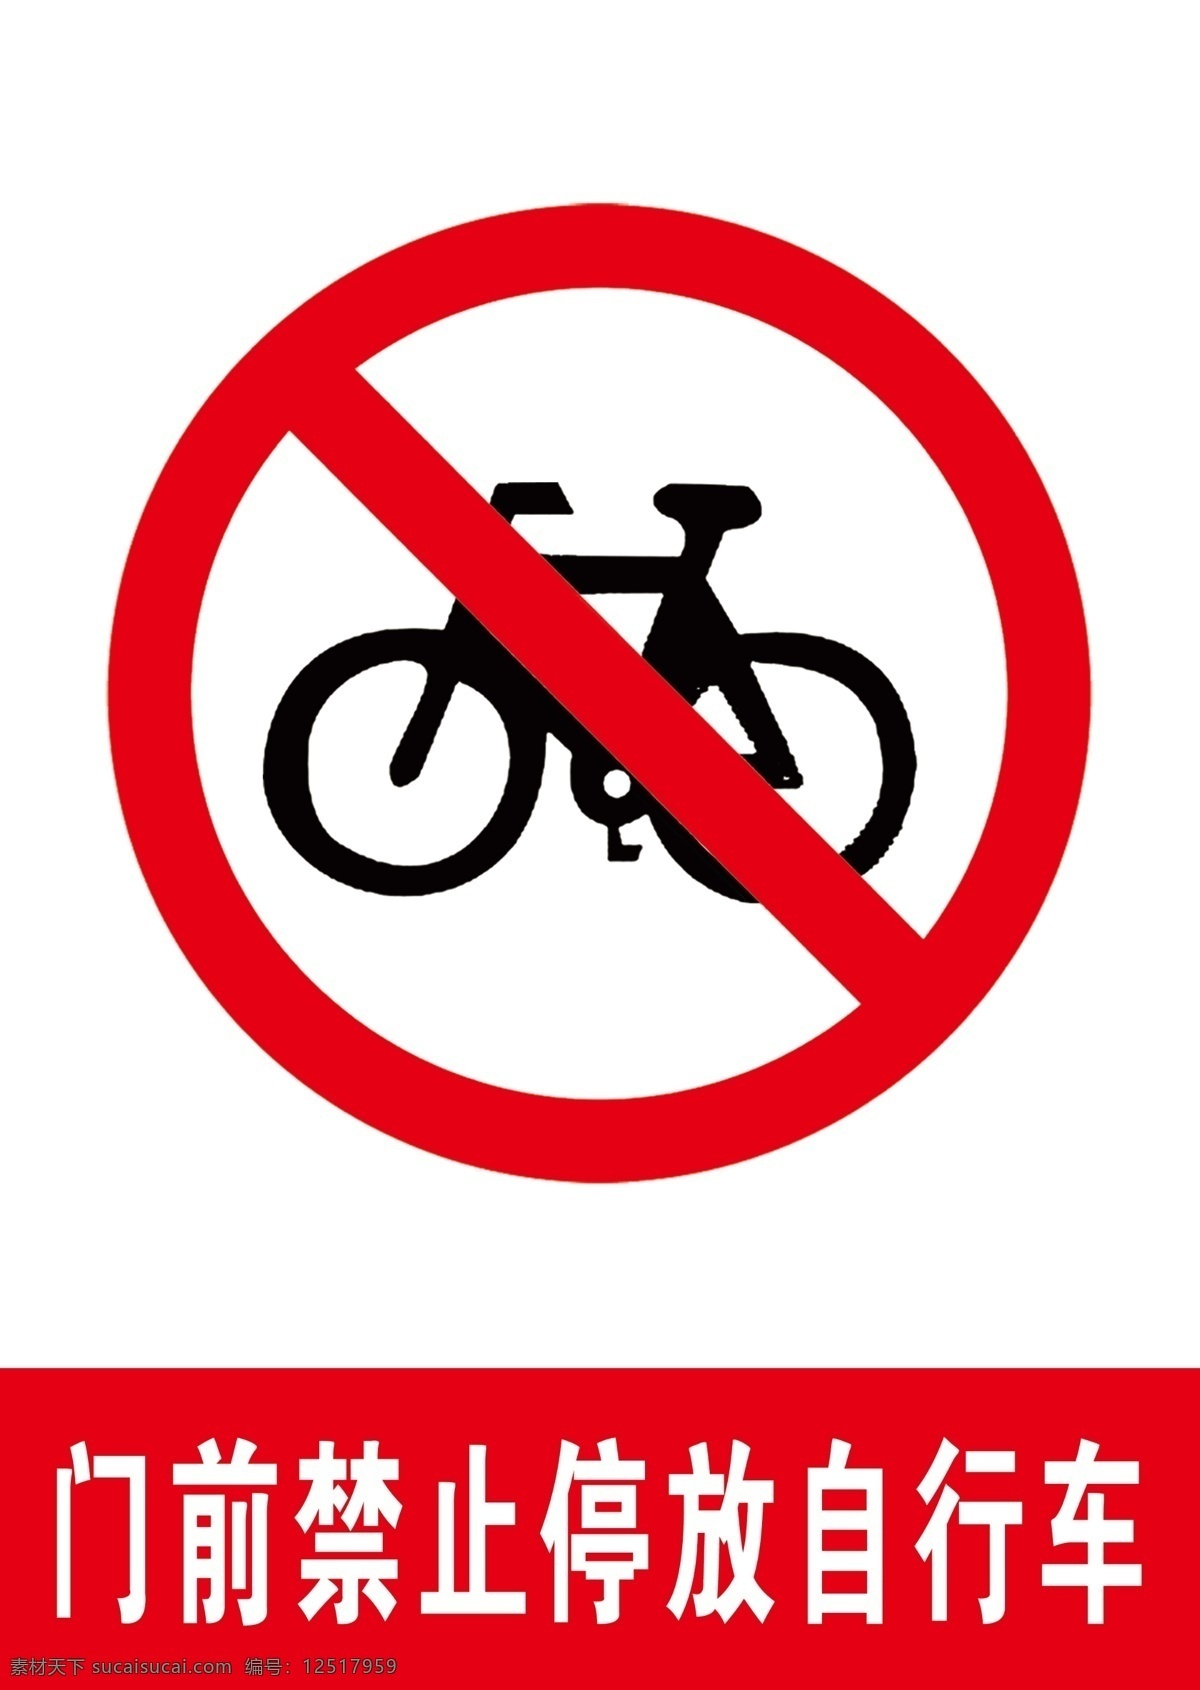 门前 禁止 停放 自行车 停放自行车 门前禁止停车 停自行车 禁止停自行车 自行车标识